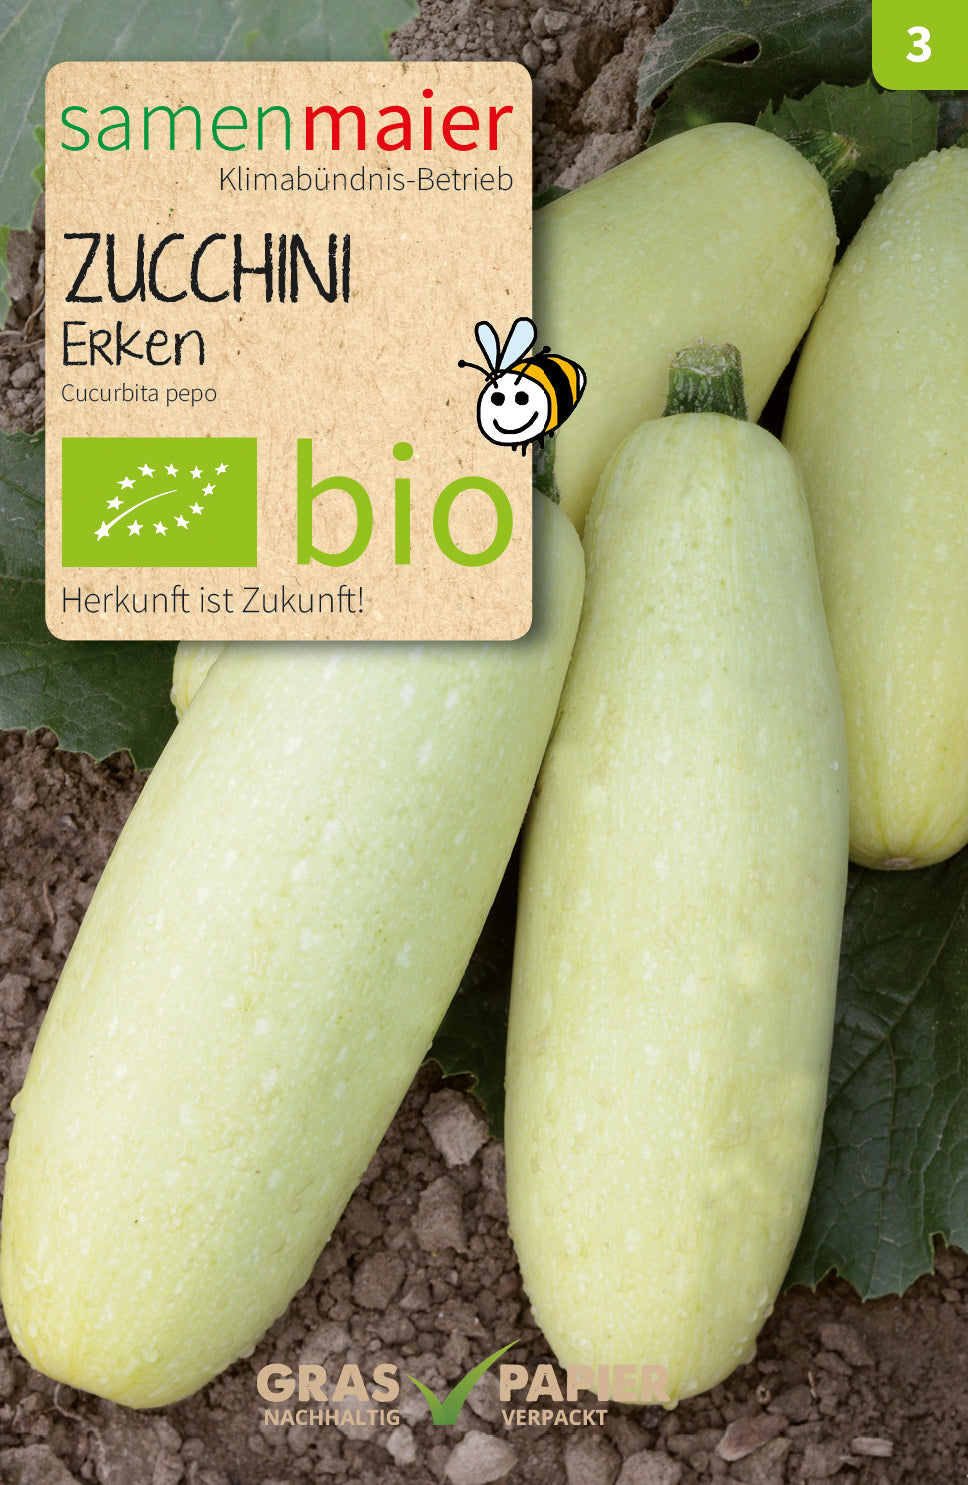 Zucchini Erken | BIO Zucchinisamen von Samen Maier